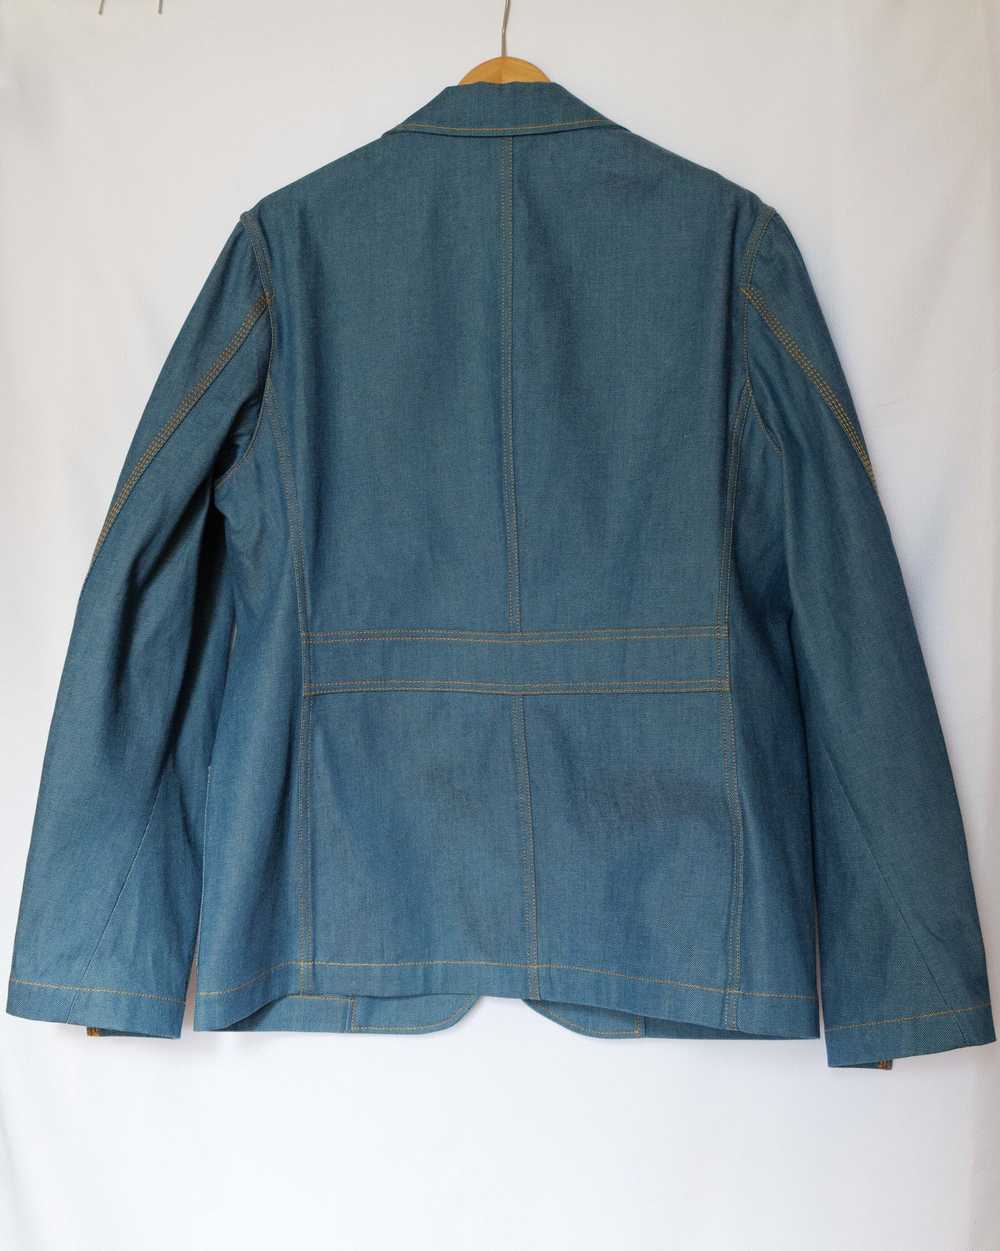 Lanvin denim jacket - image 2